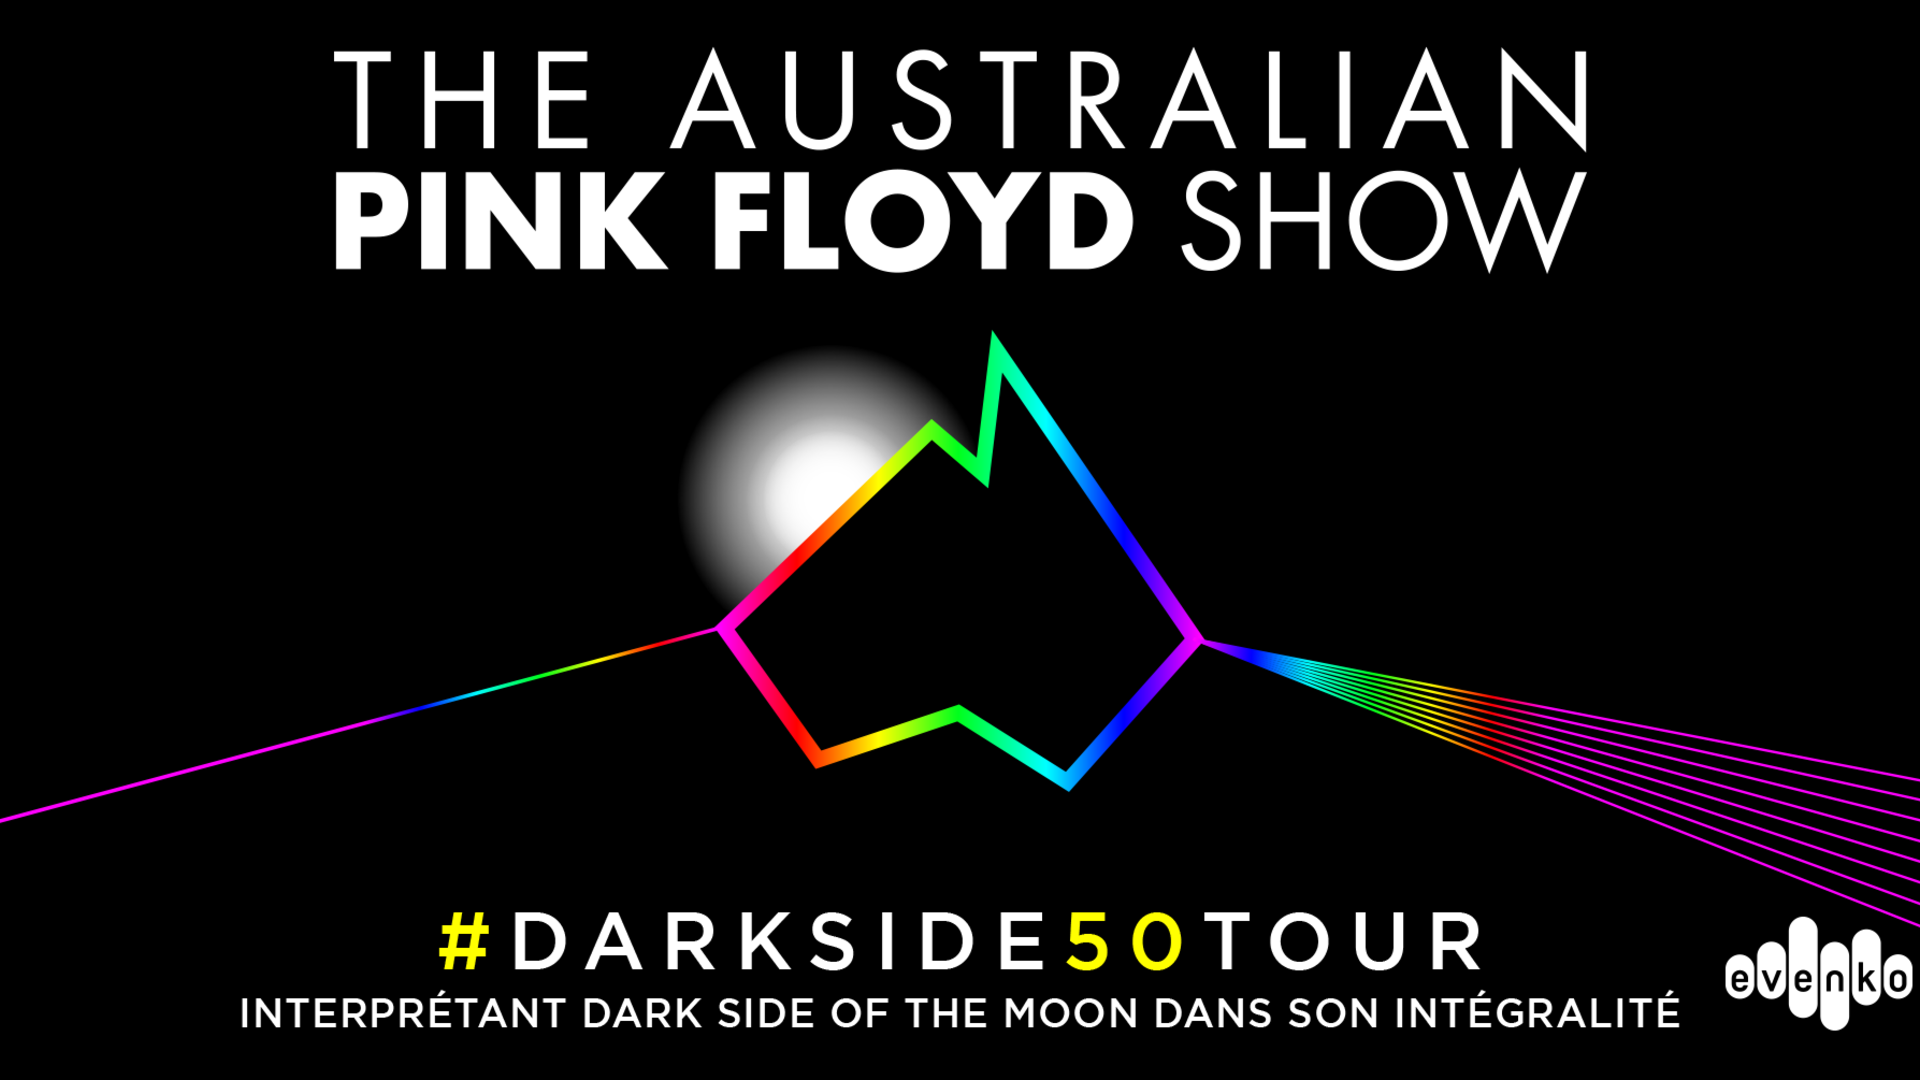 Darkside 50 Tour